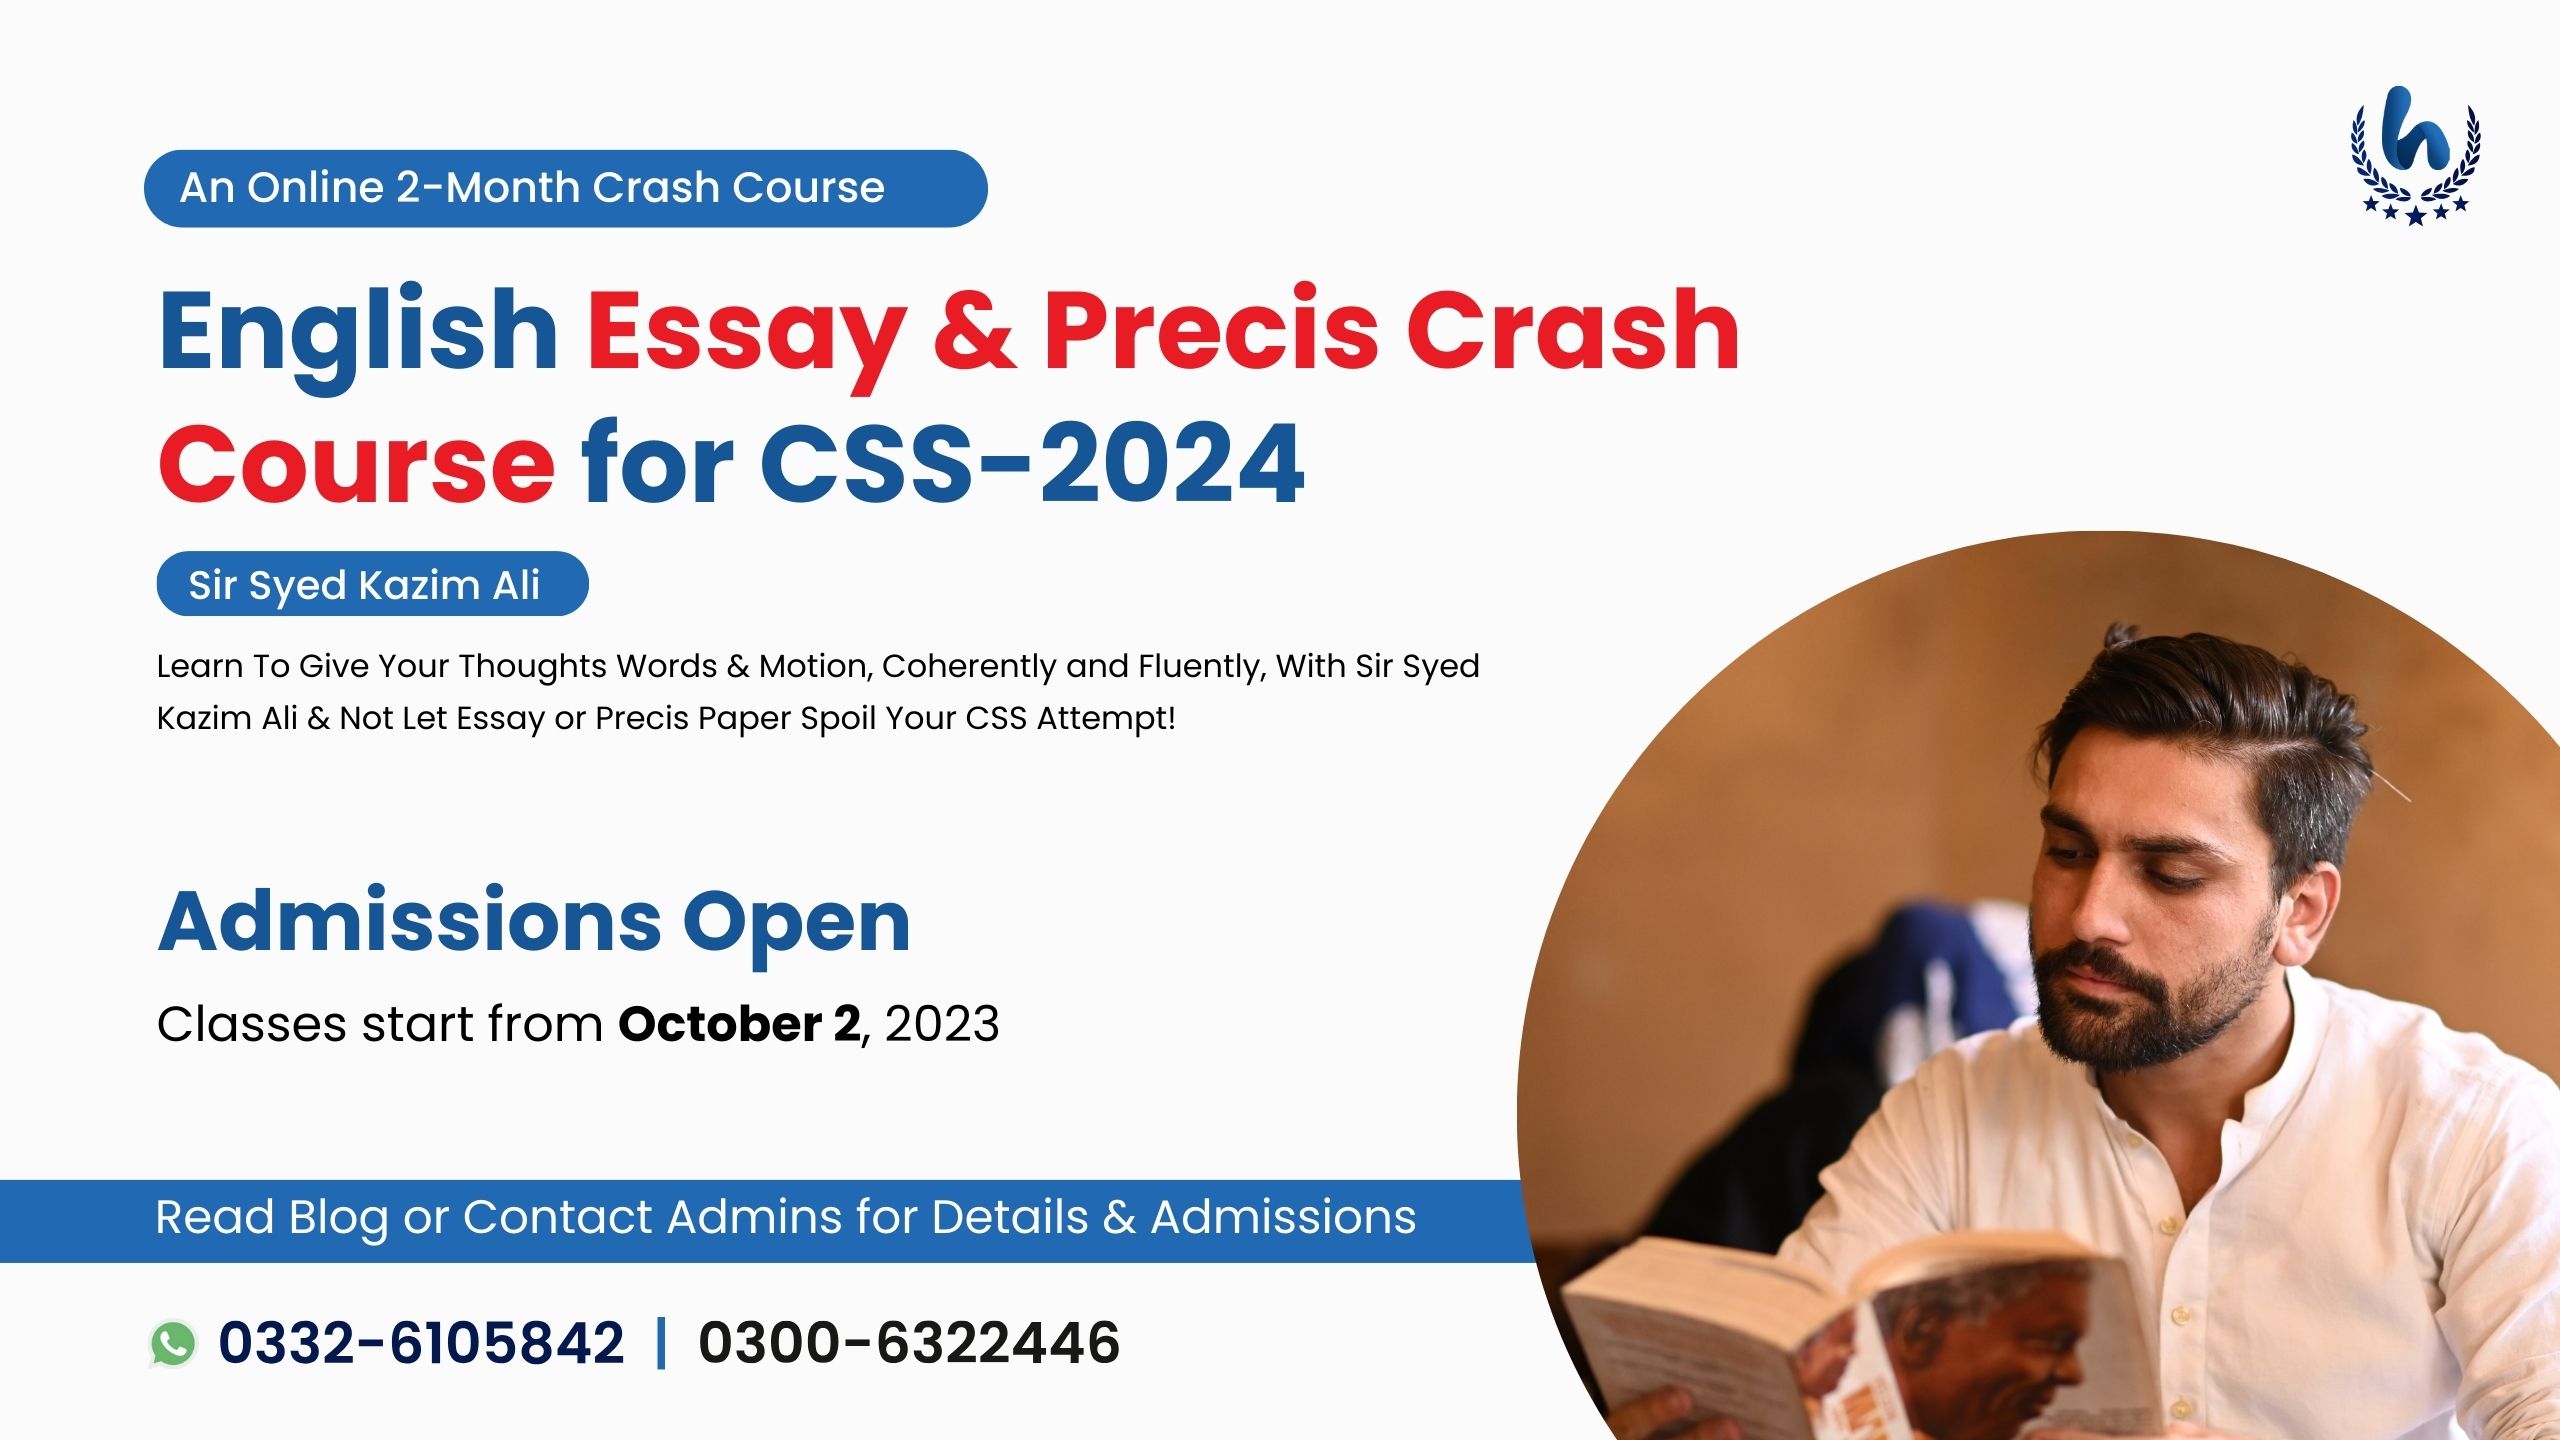 English Essay & Precis Crash Course for CSS